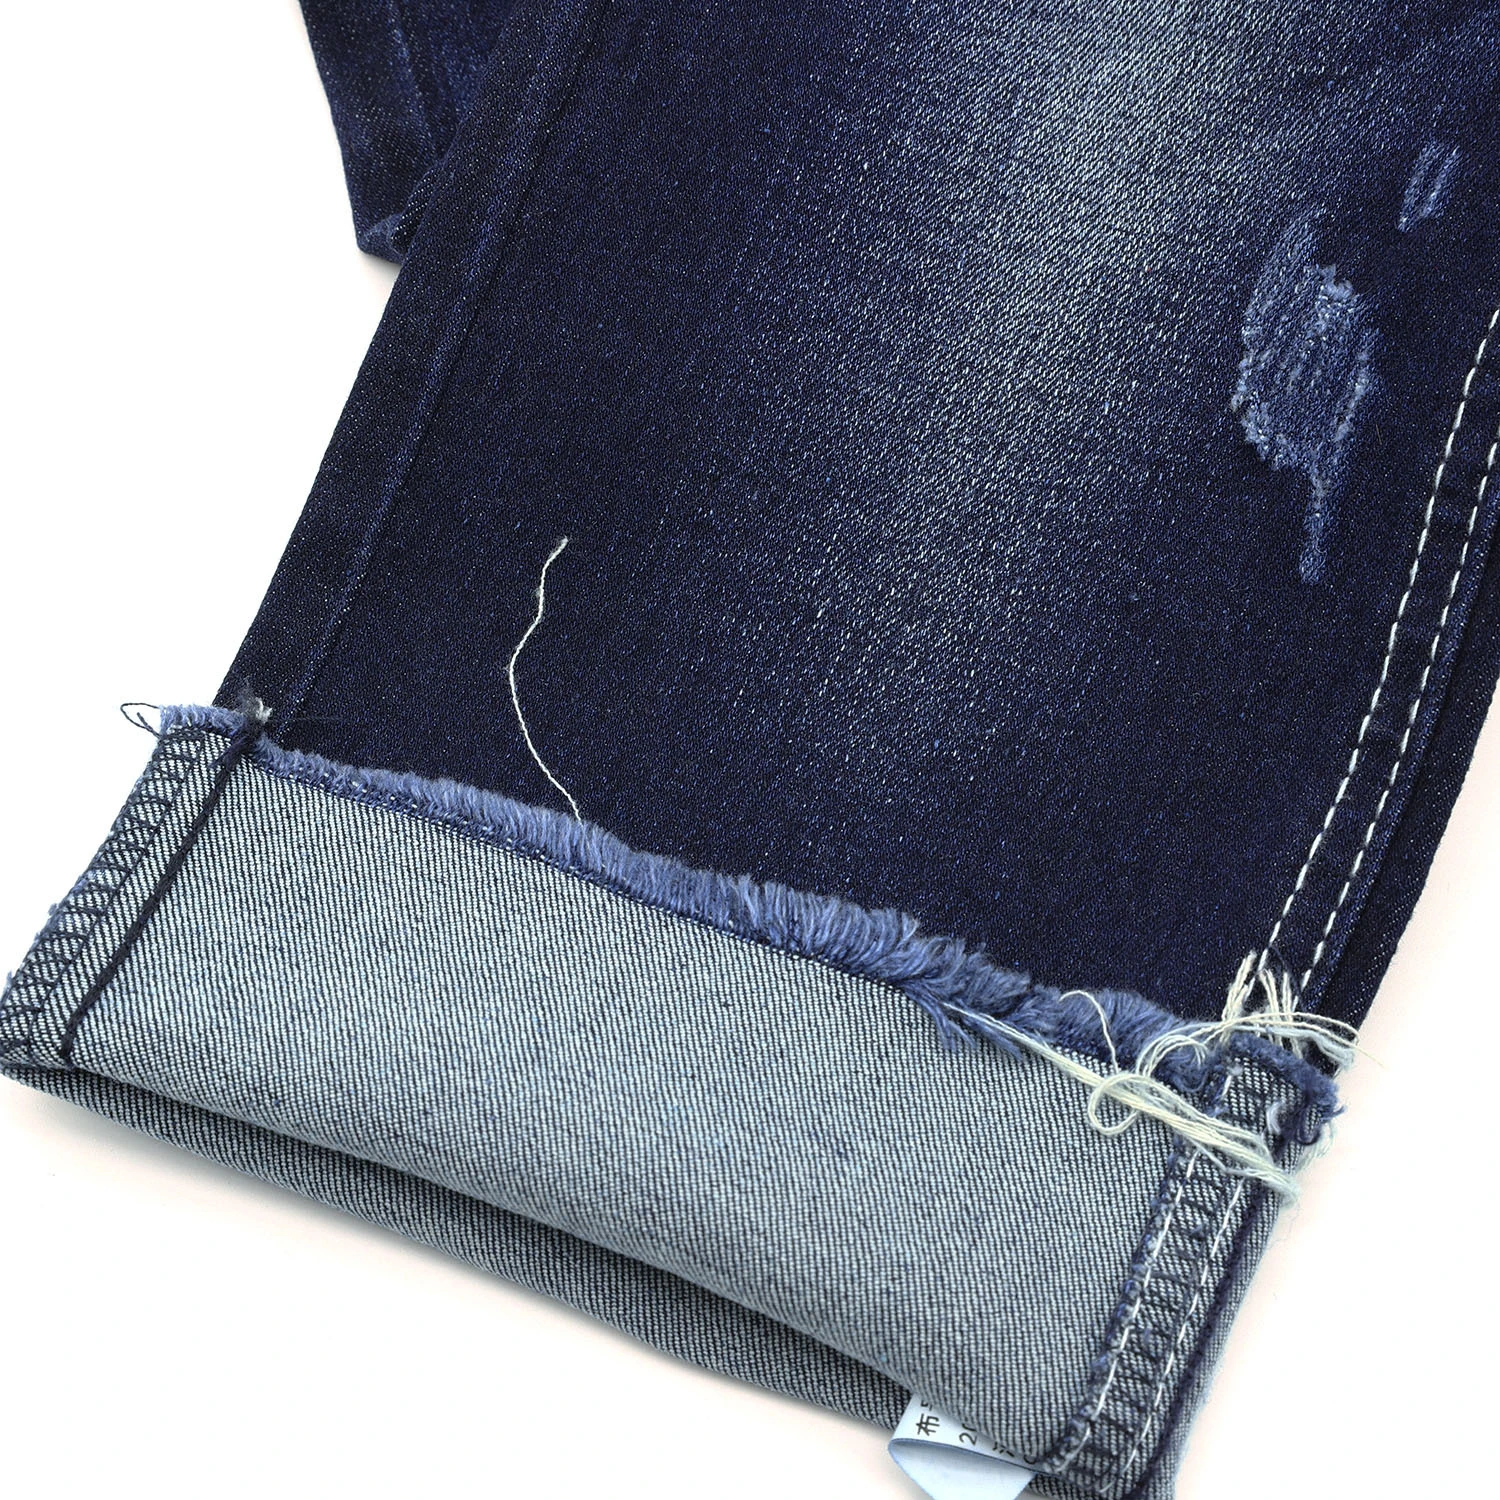 10.5oz 315A-3  stretchable 10.5oz denim fabric with slub 5